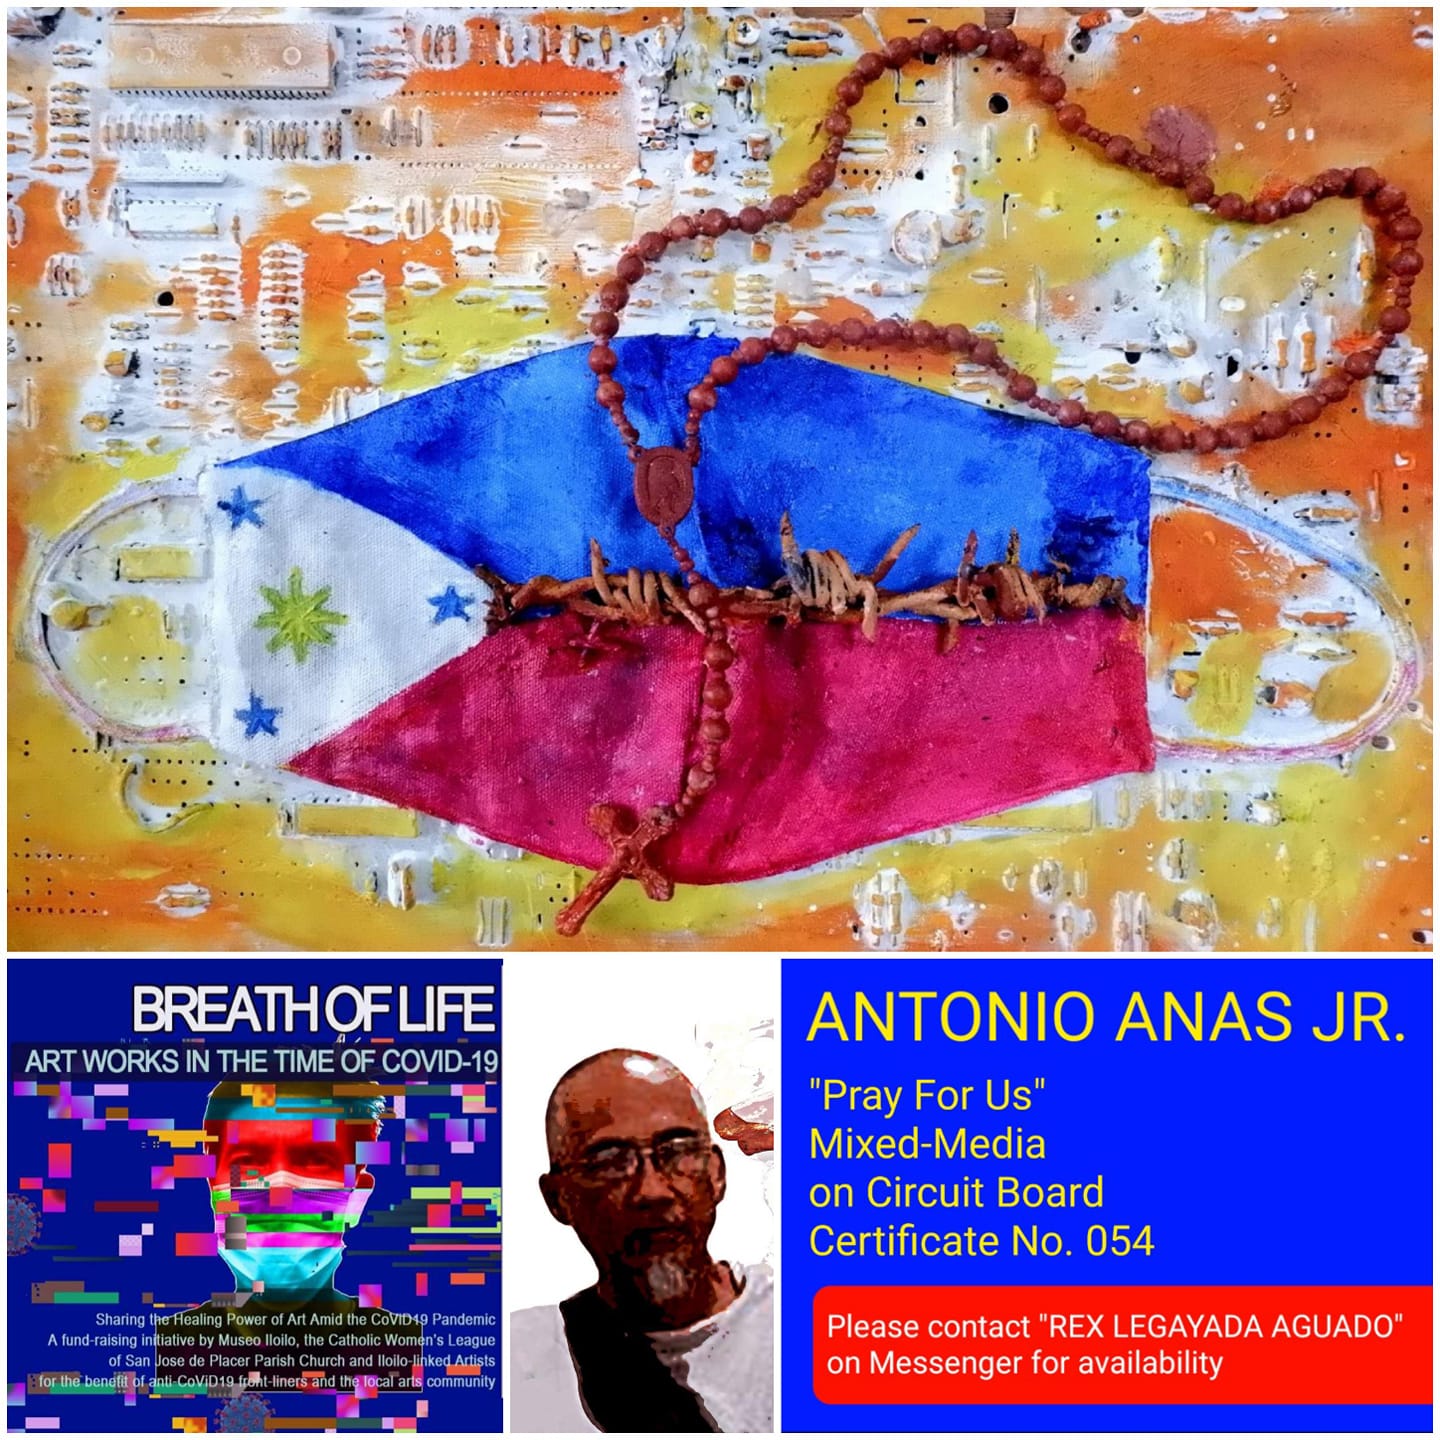 Antonio Anas Jr